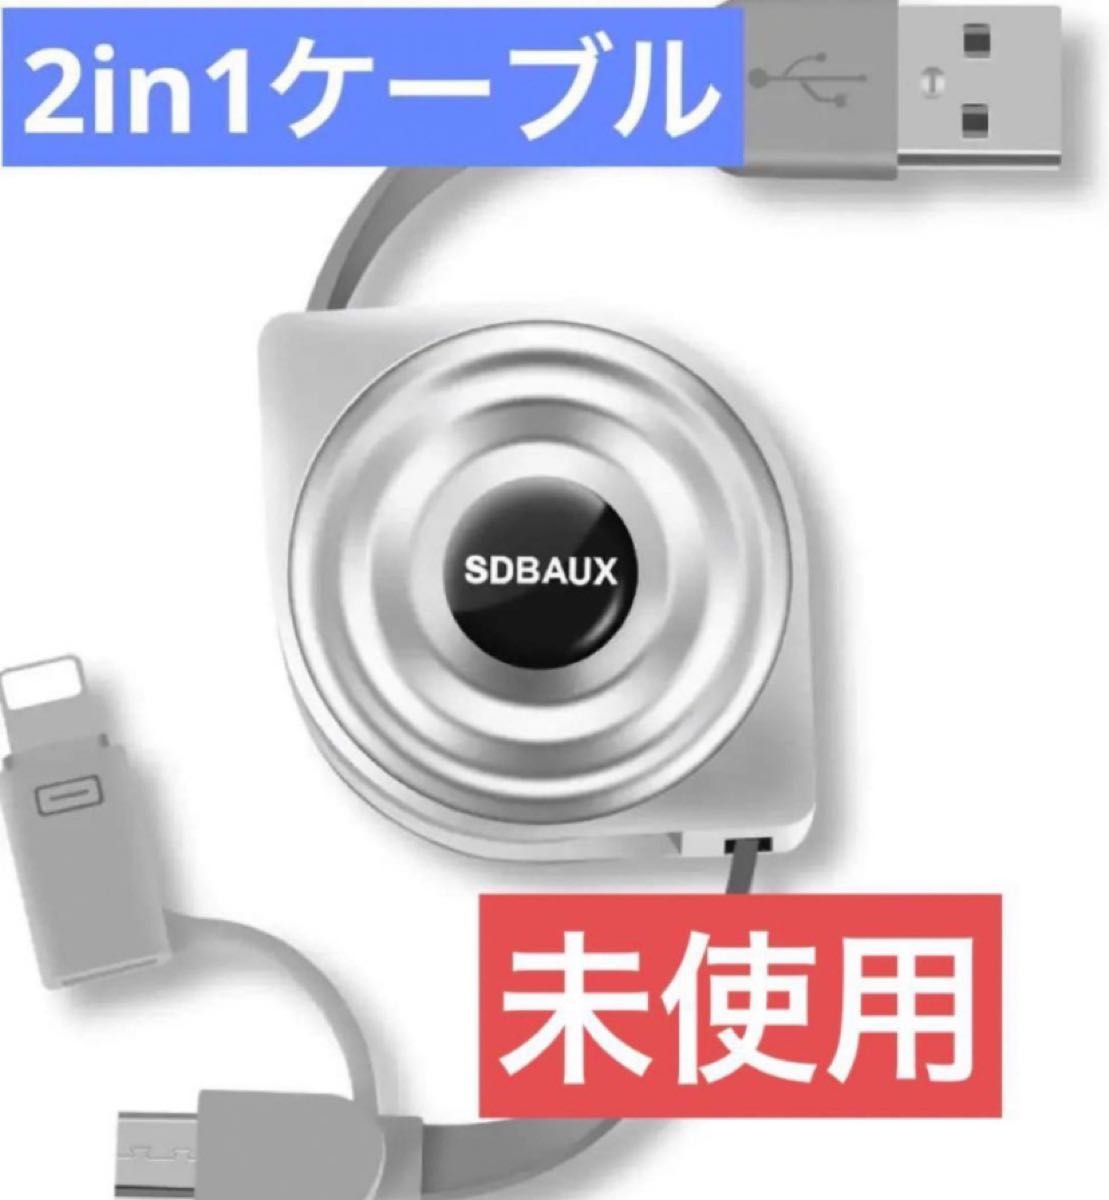 ケーブル ライトニング&Micro USB 2in1 USB充電 データ転送対応Phone 11 12 Pro Max